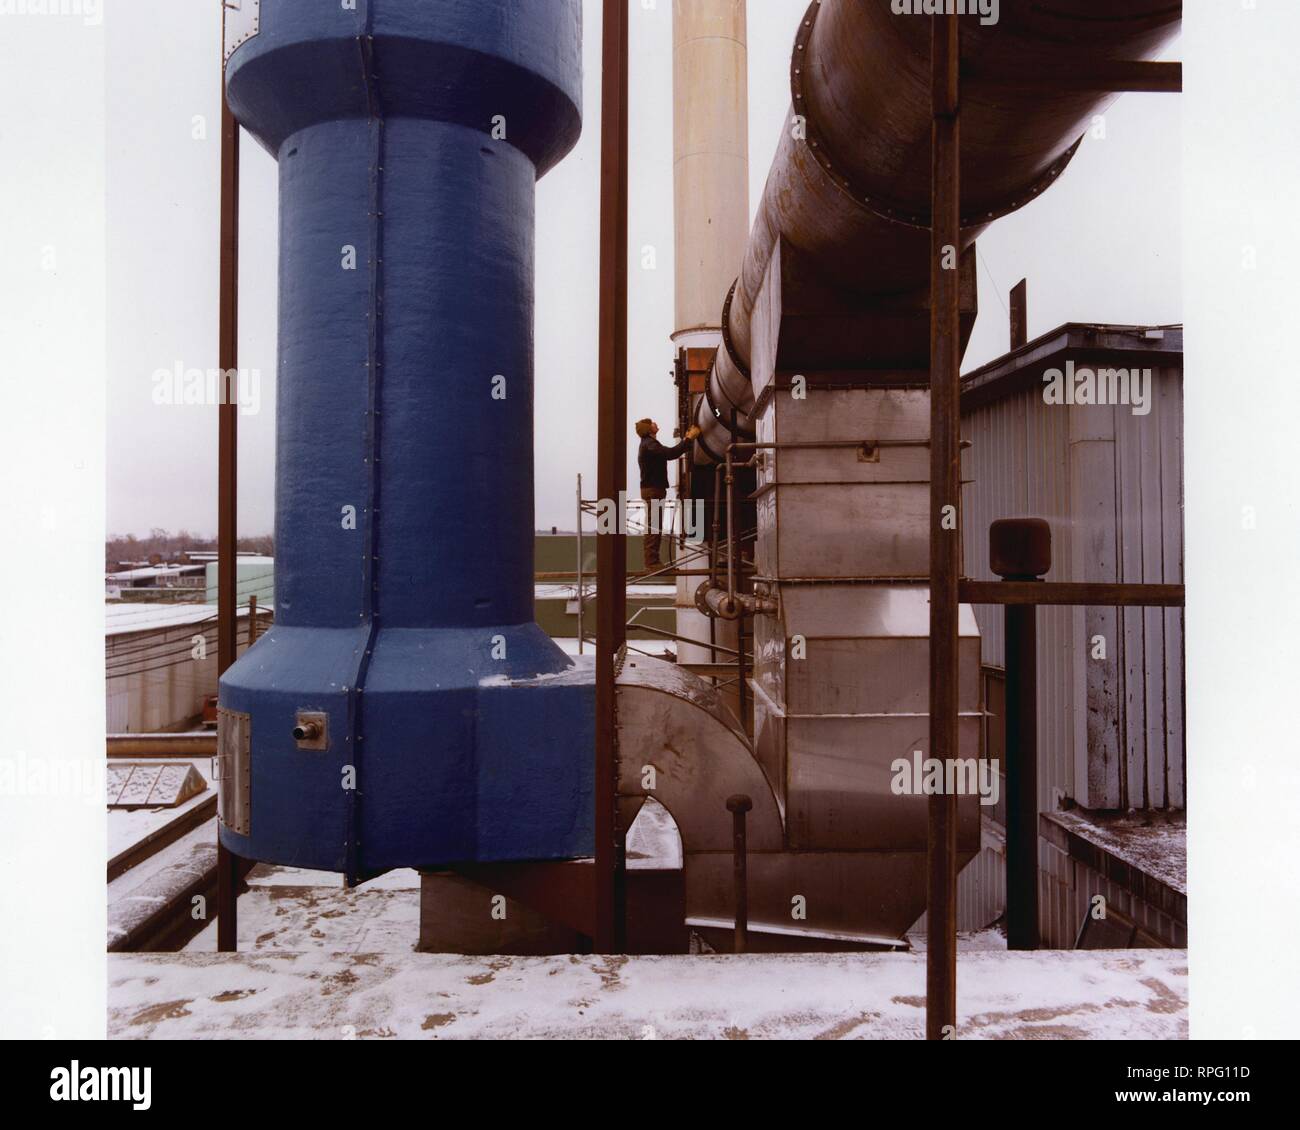 Sta un uomo in profilo, in un giorno di neve su un tetto accanto a un estrattore di calore, 1995. Immagine cortesia del Dipartimento Americano di Energia. () Foto Stock